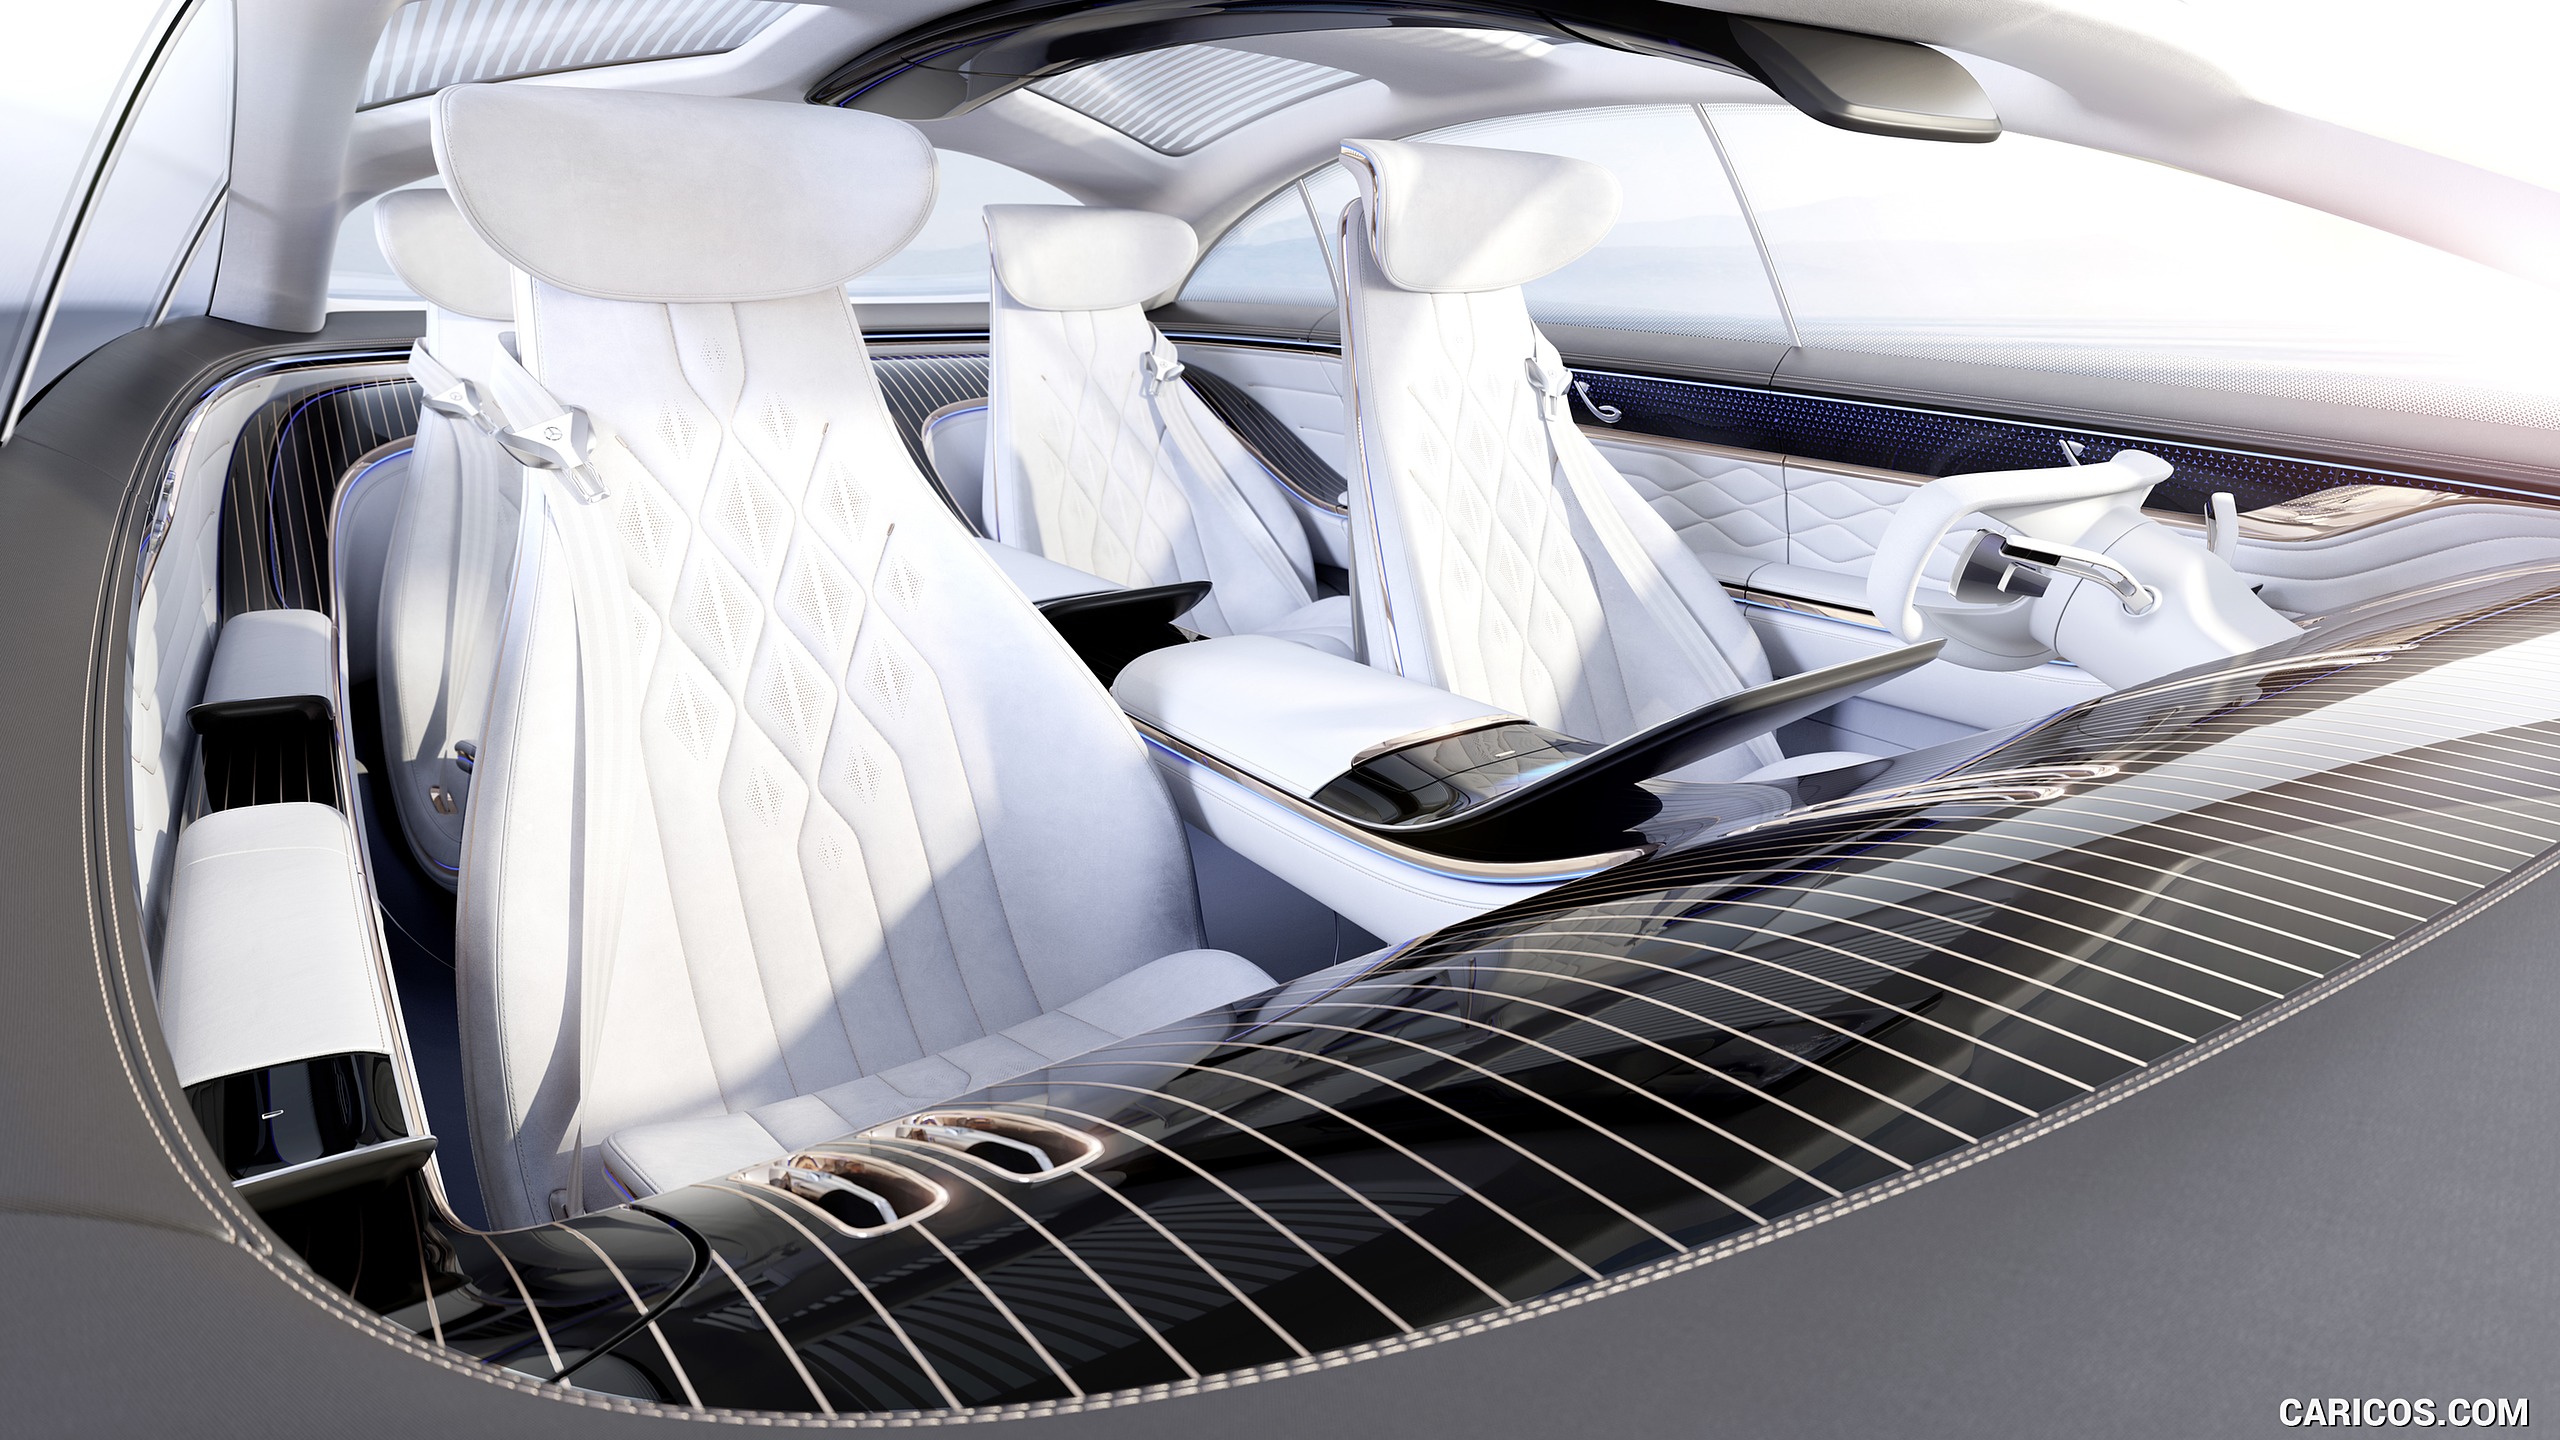 2019 Mercedes-Benz Vision EQS Concept - Interior, #45 of 58